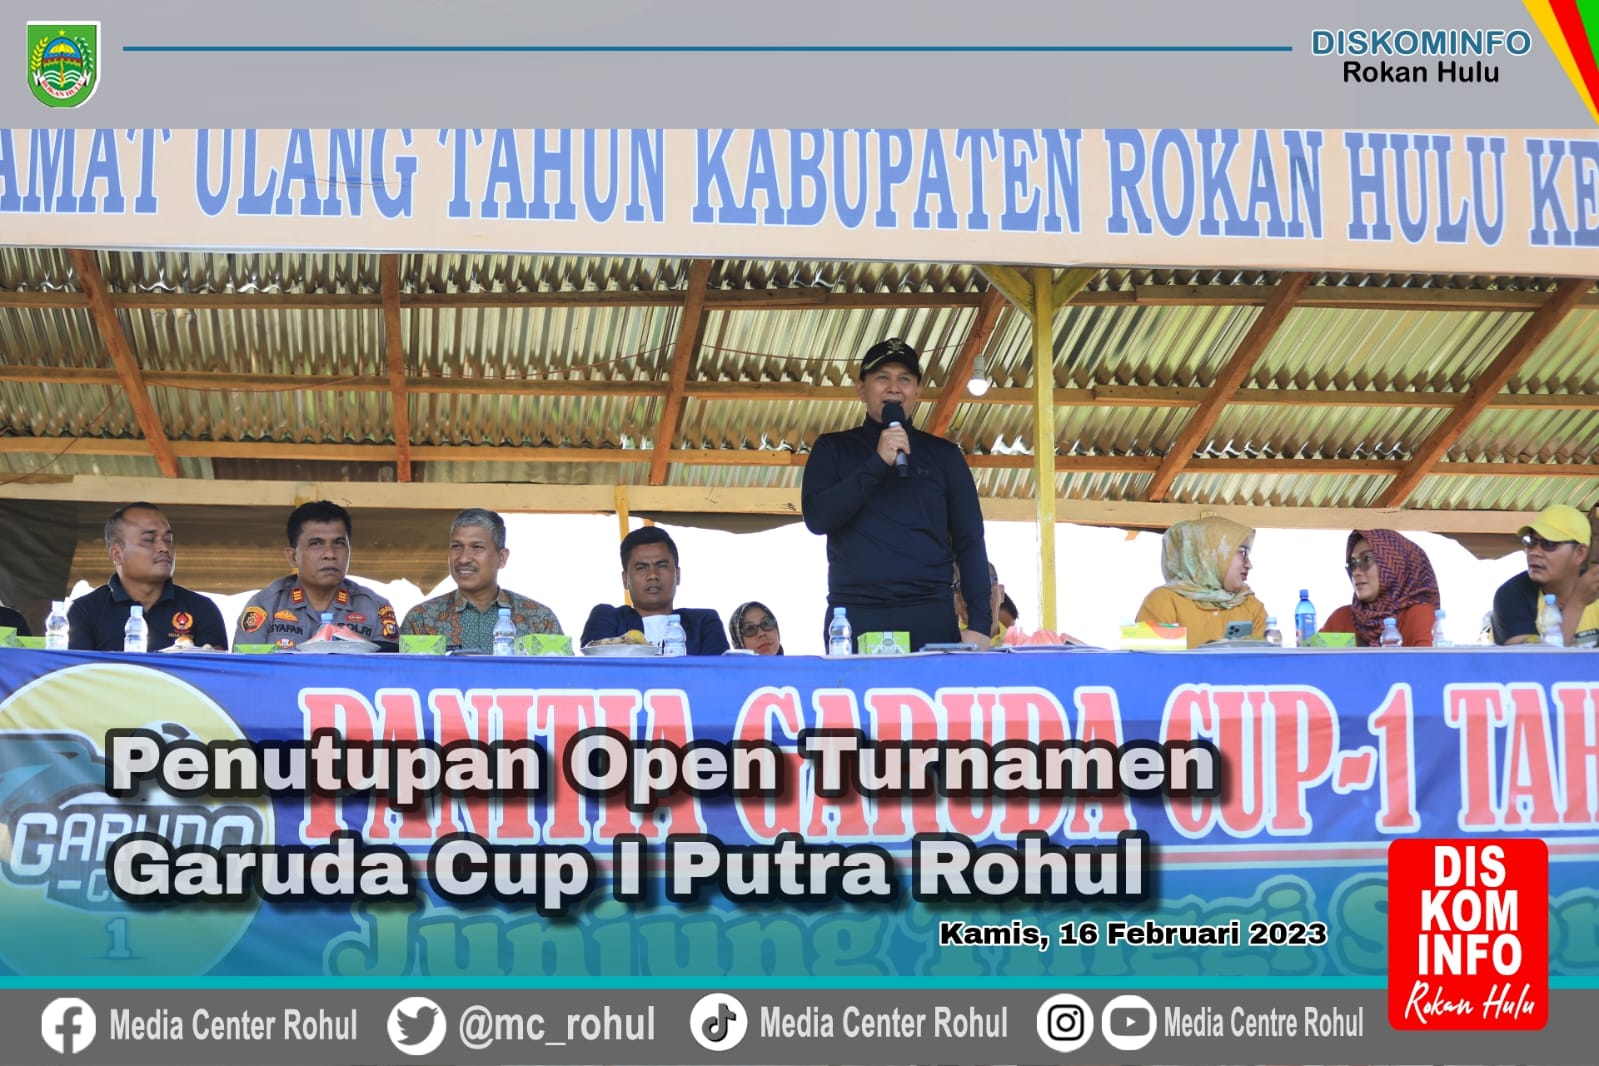 Tutup Secara Resmi Turnamen Garuda Cup 1 Putra Rohul Tahun 2022, Wabup : Garuda Cup 2 Nanti Harus Lebih Besar Lagi